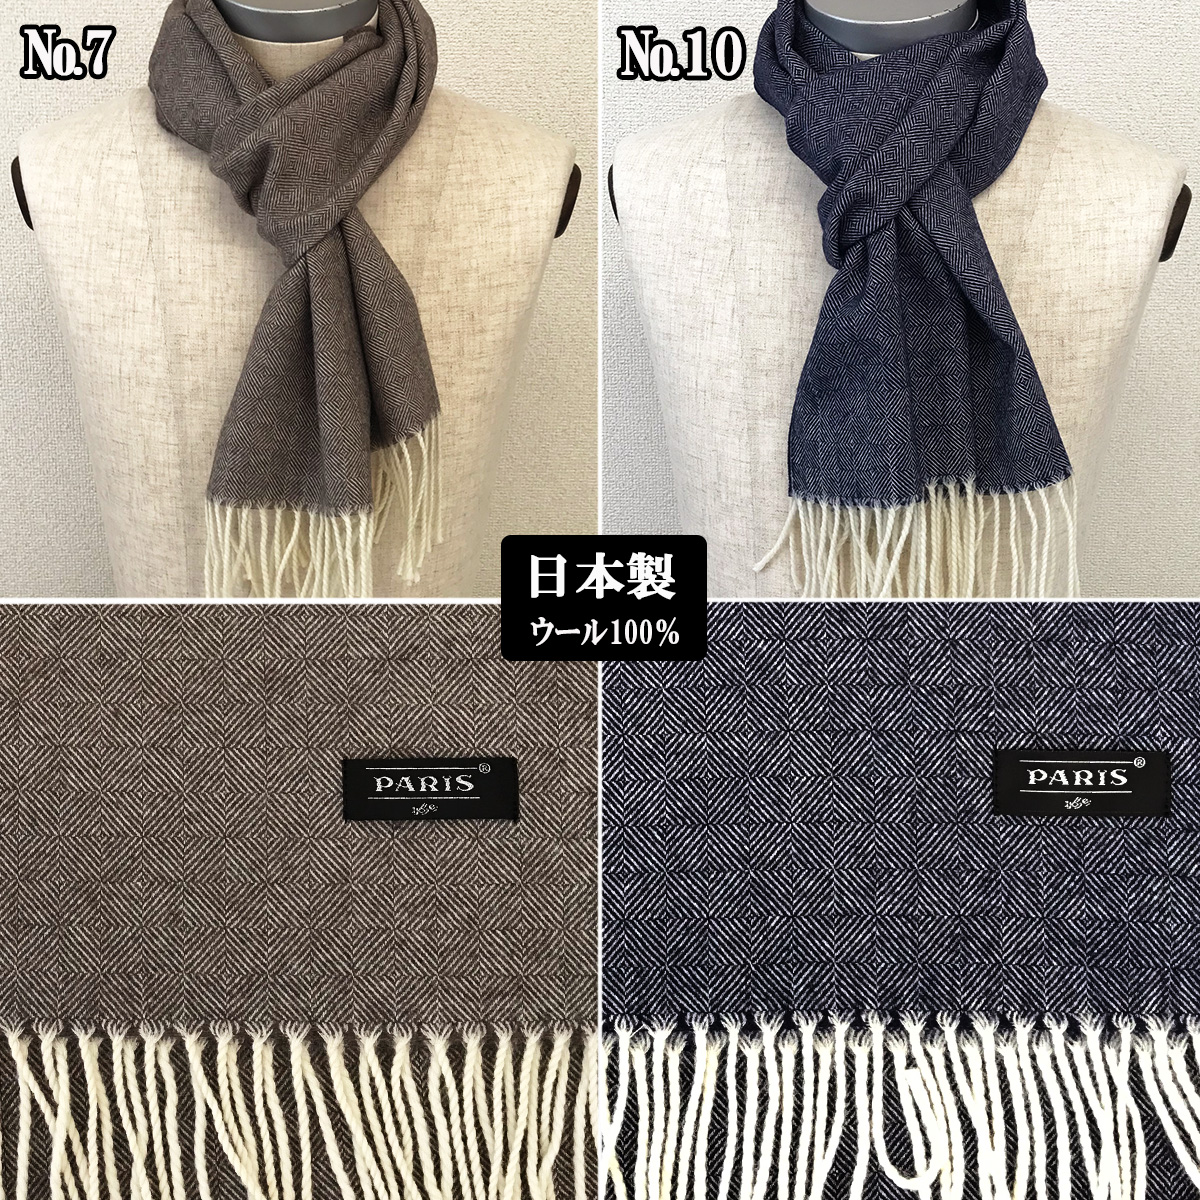  muffler сделано в Японии шерсть 100% мужской мужской женский одноцветный бизнес casual зима защищающий от холода почтовая доставка бесплатная доставка 